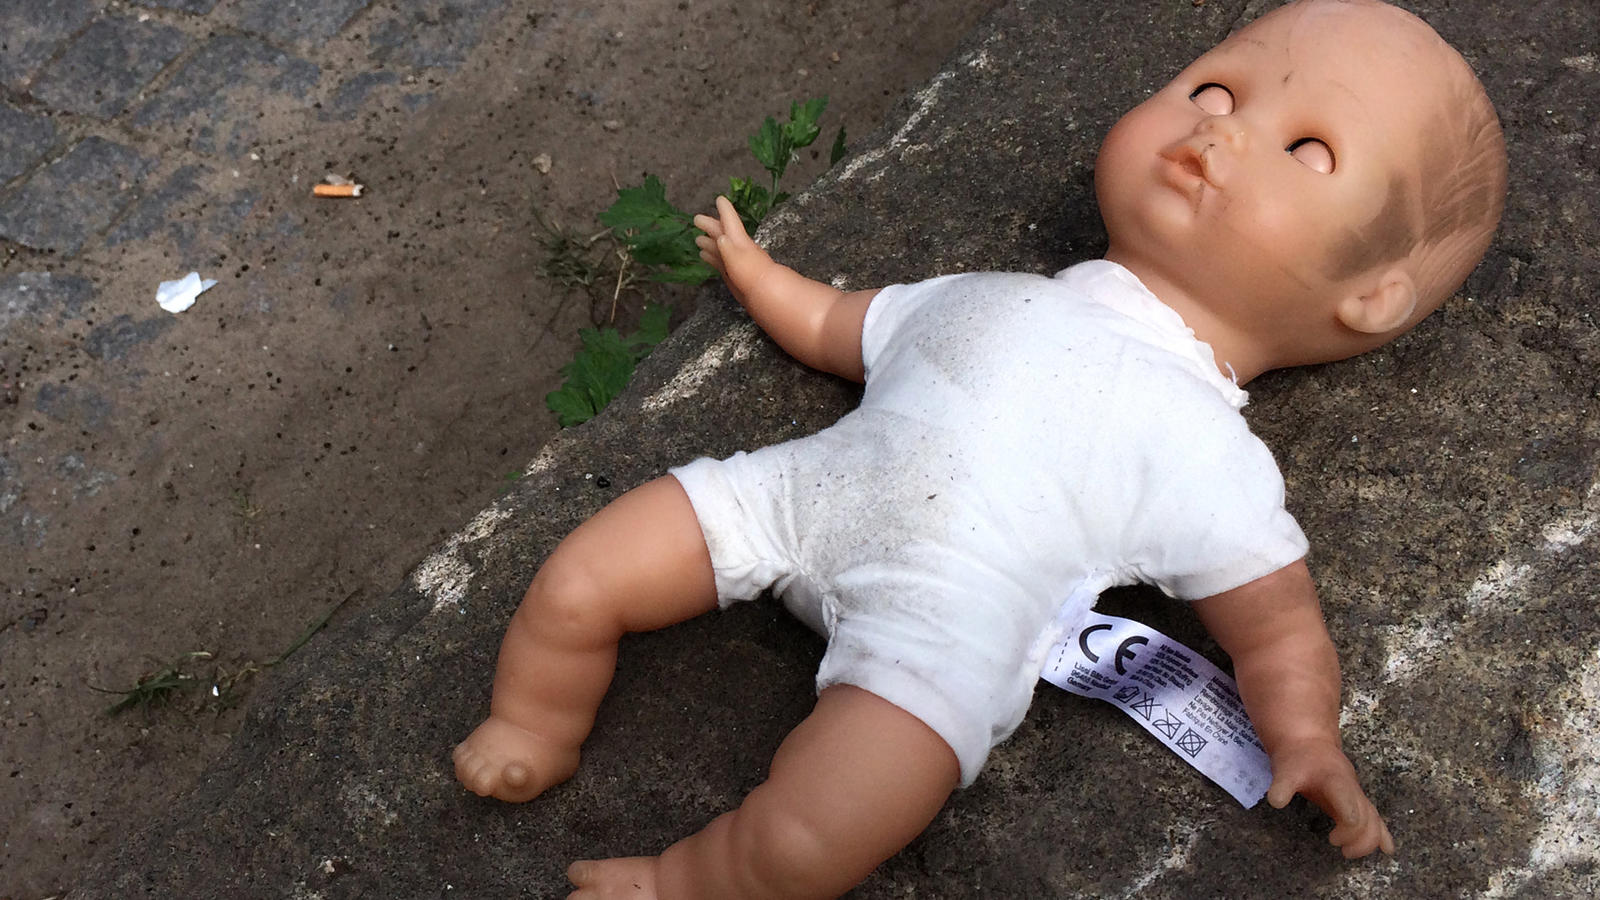 ARCHIV - ILLUSTRATION - Eine Puppe liegt am 30.04.2014 in Berlin am Straßenrand. Ein Auszubildender zum Kinderpfleger soll zwei Jahre lang mehrere kleine Jungs sexuell missbraucht haben. Vom 27.03.2017 an muss sich der heute 22-Jährige wegen sexuelle